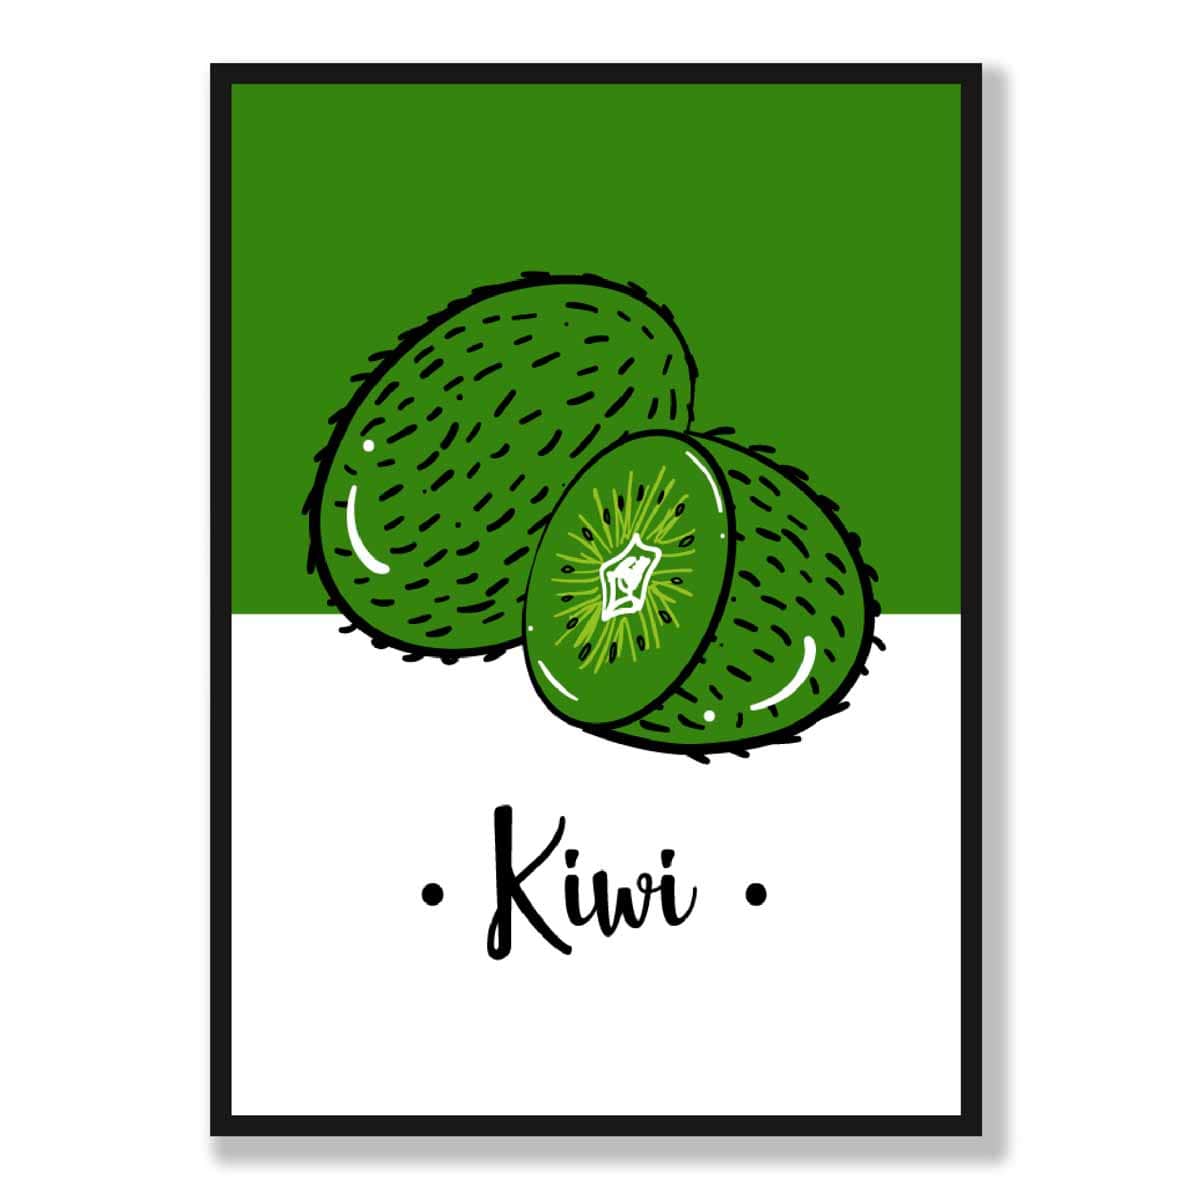 Sketch Fruit Poster of Kiwis in Green